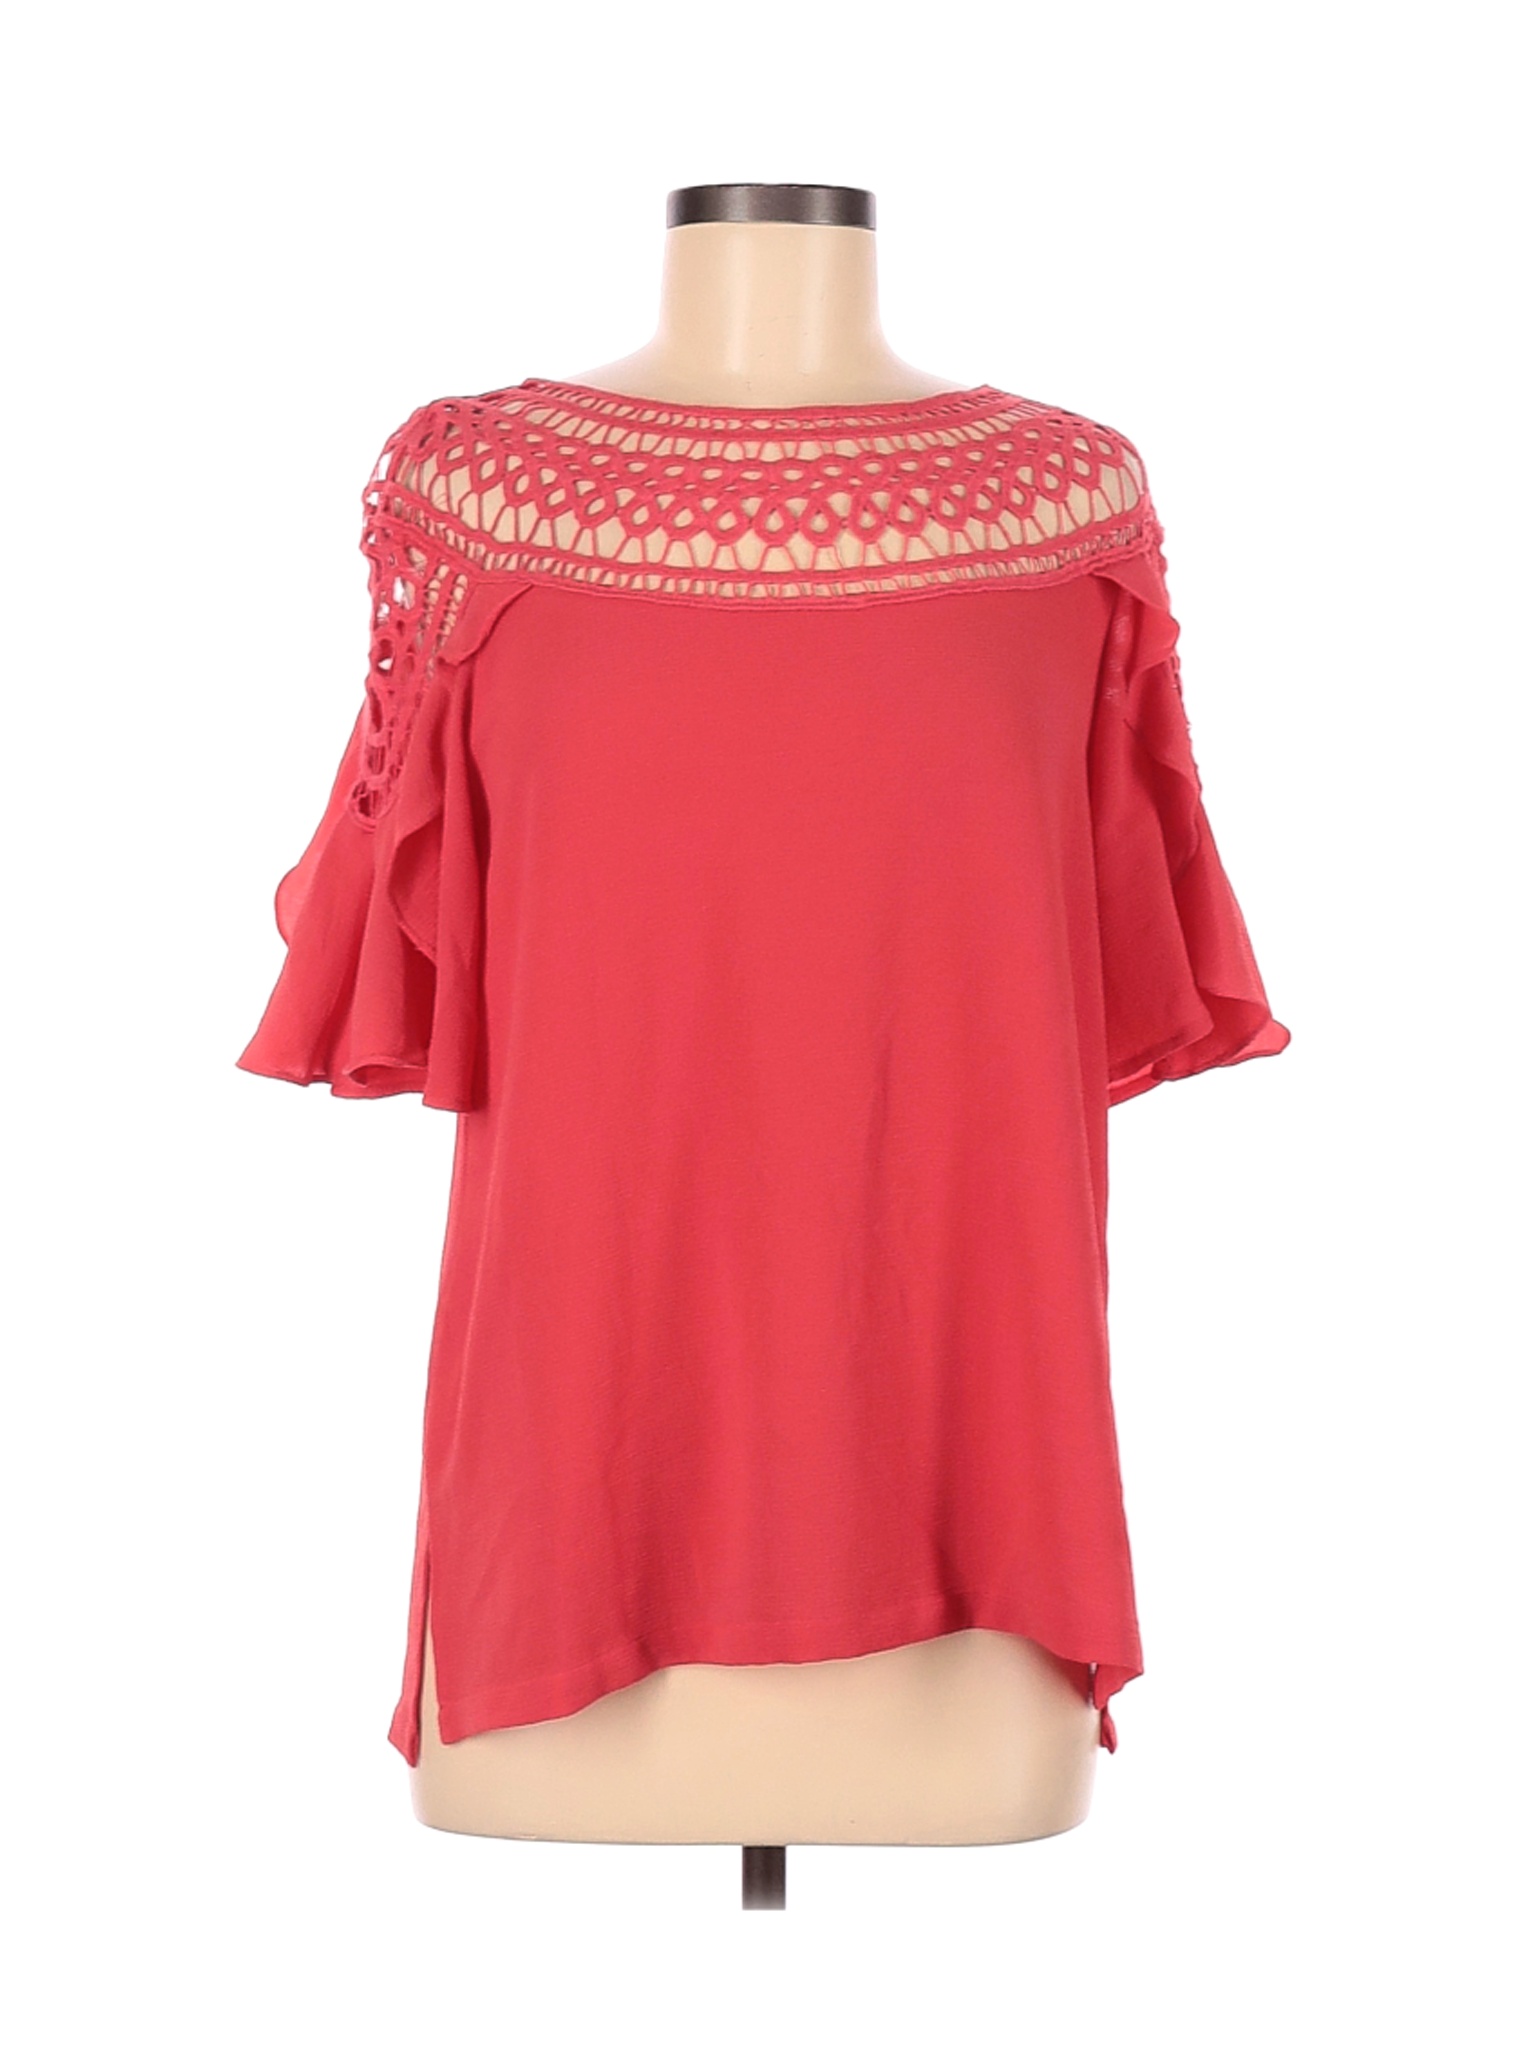 Jodifl Women Red Short Sleeve Blouse S | eBay